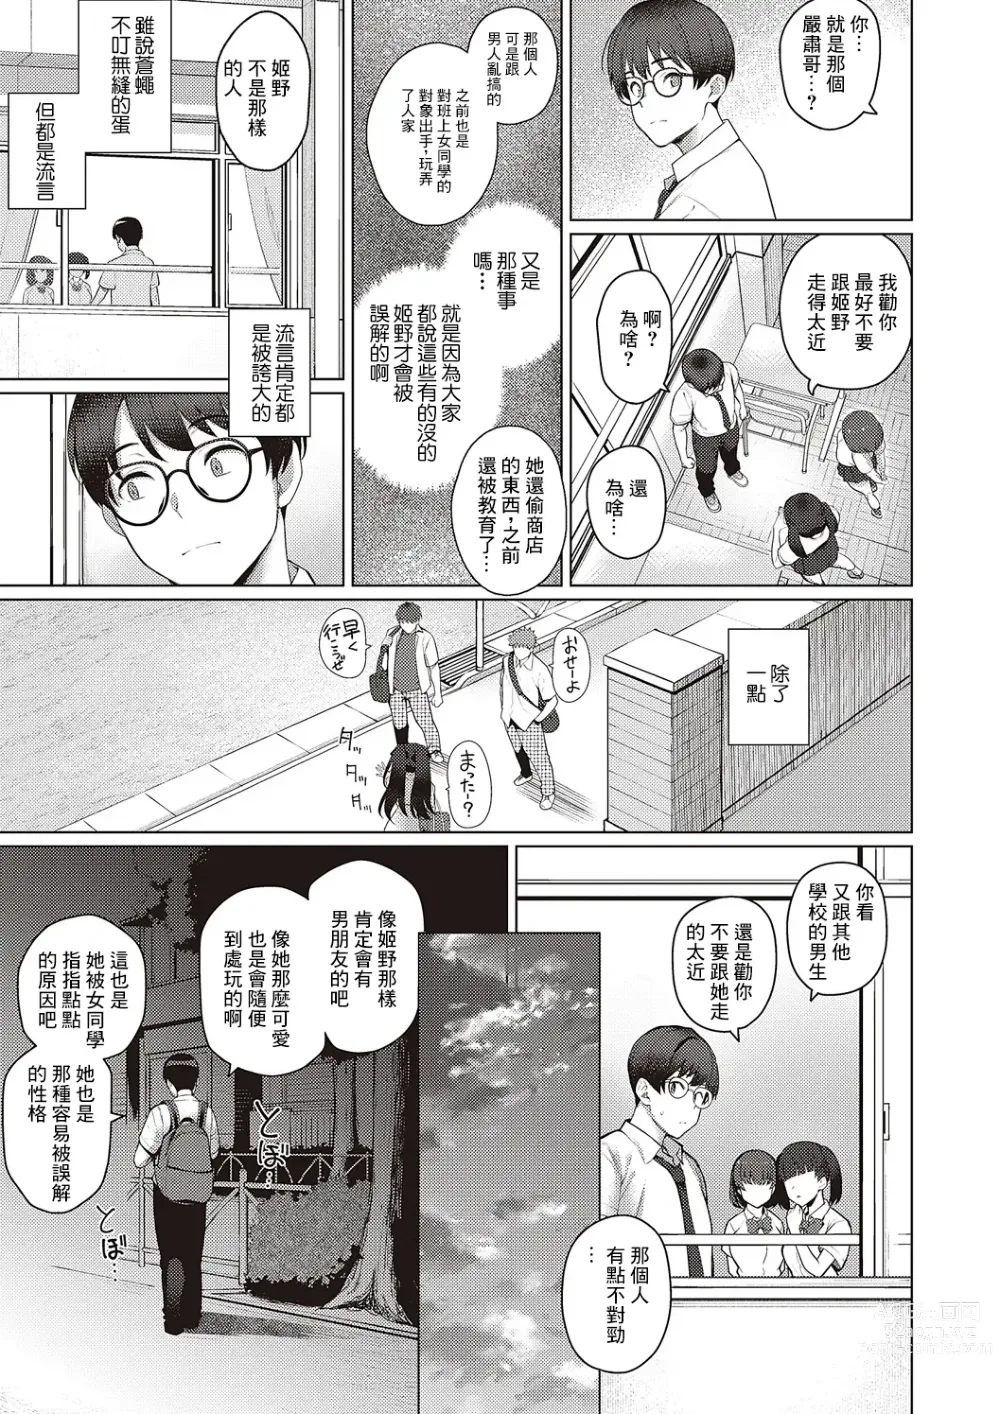 Page 9 of manga Majime to Fumajime